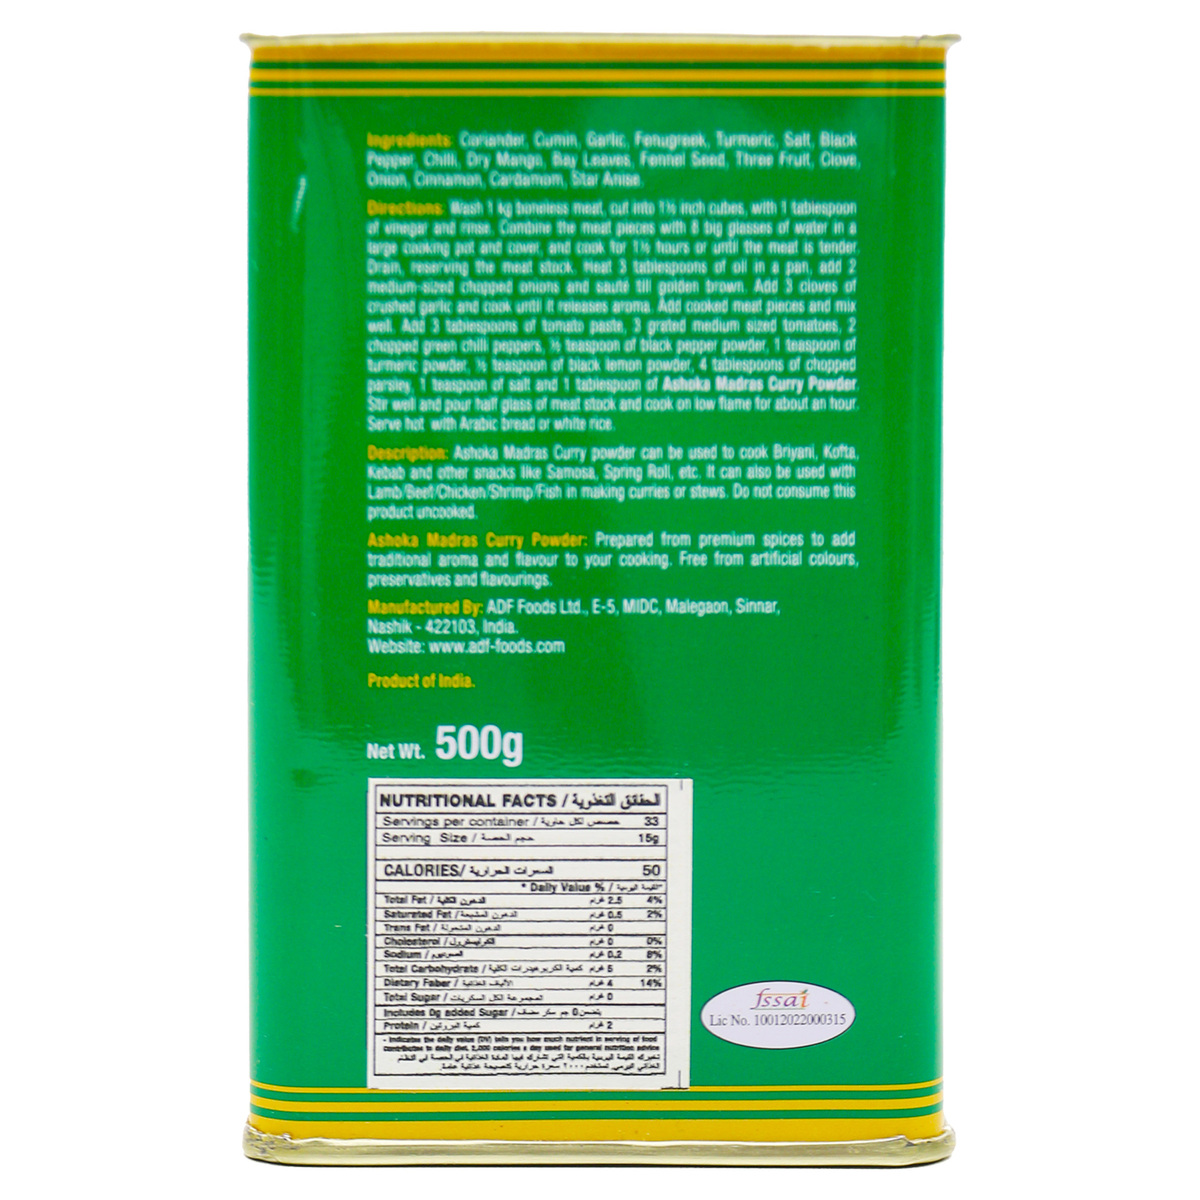 Ashoka Madras Curry Powder 500 g